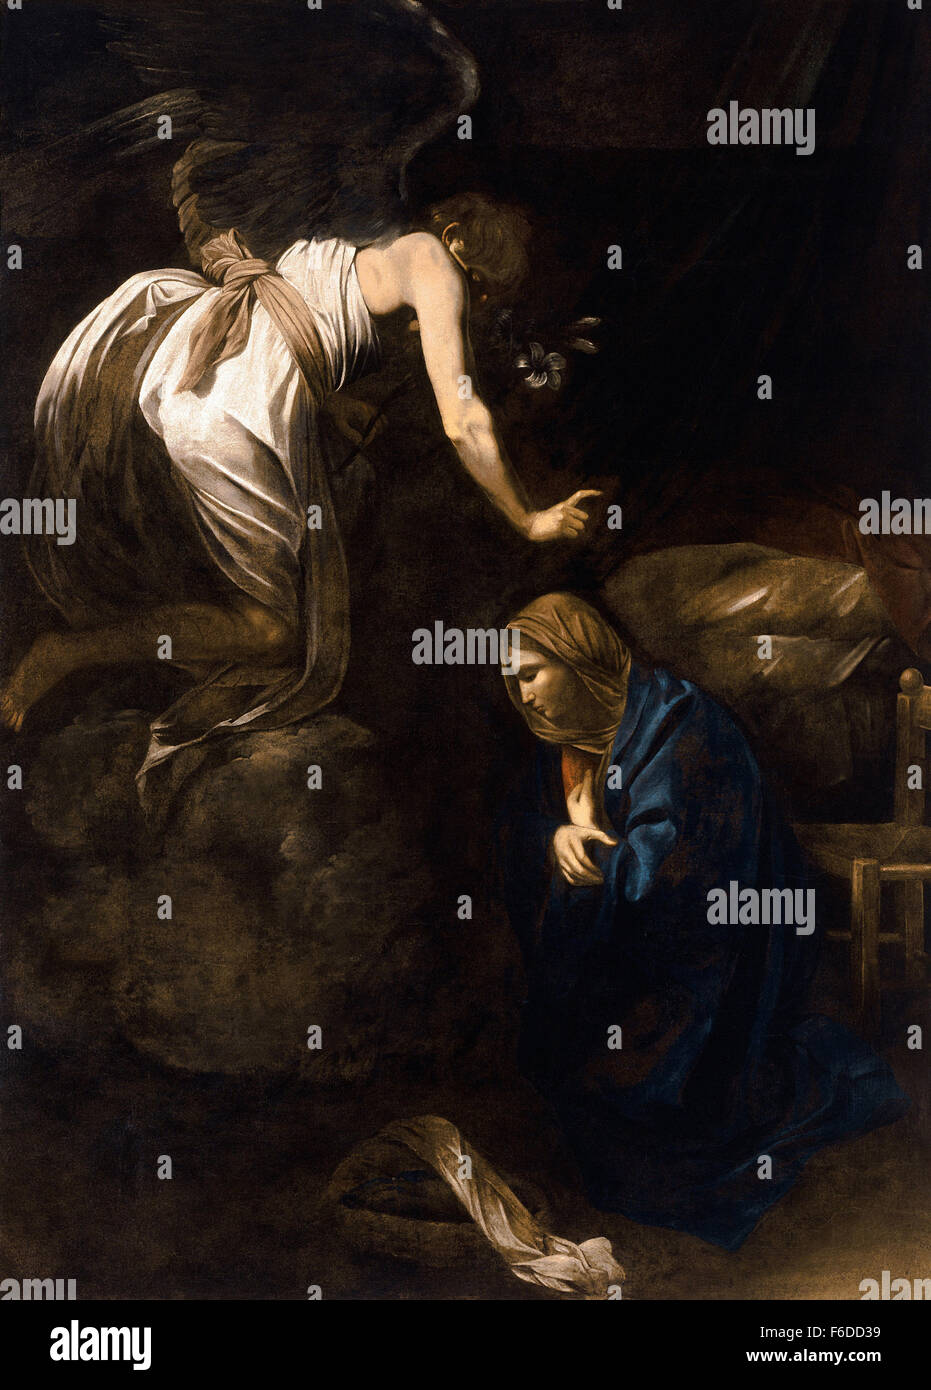 Michelangelo Merisi da Caravaggio - The Annunciation Stock Photo